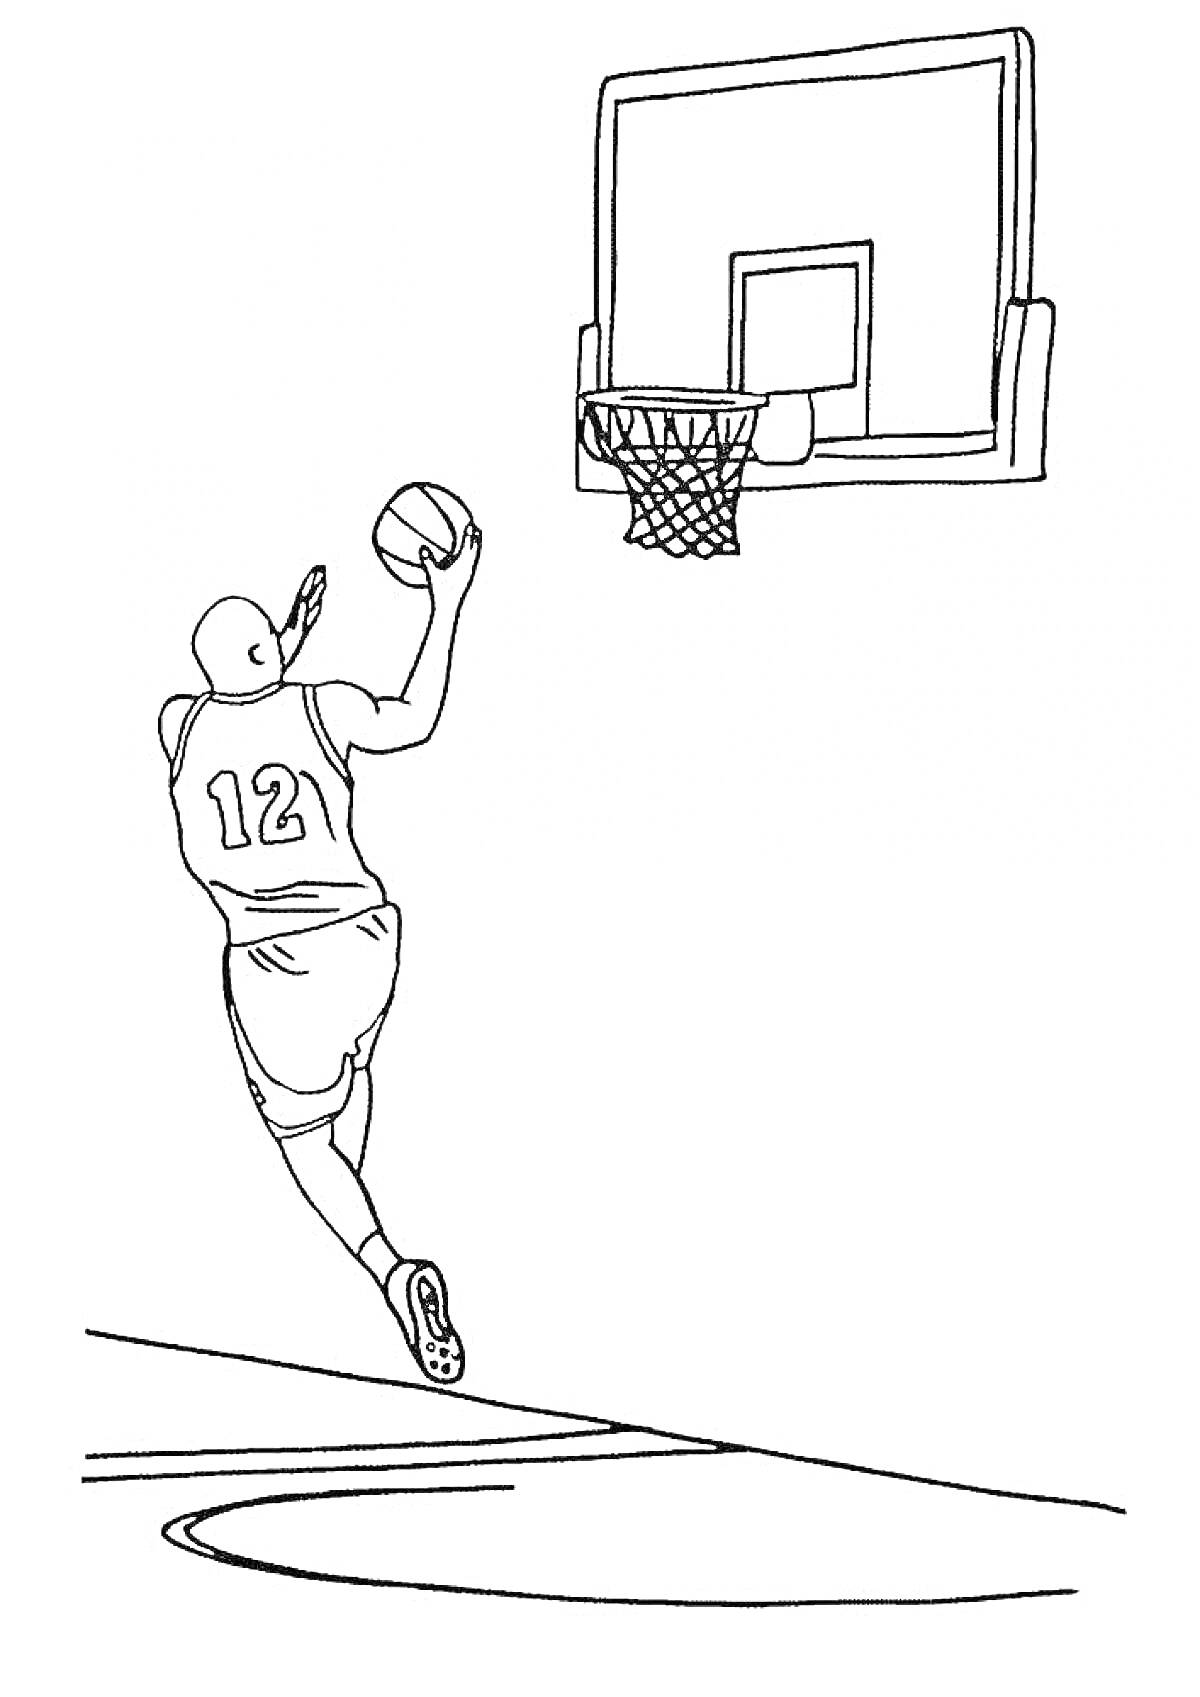 Раскраска Игрок в баскетбол, совершающий прыжок и бросок мяча в корзину на баскетбольной площадке